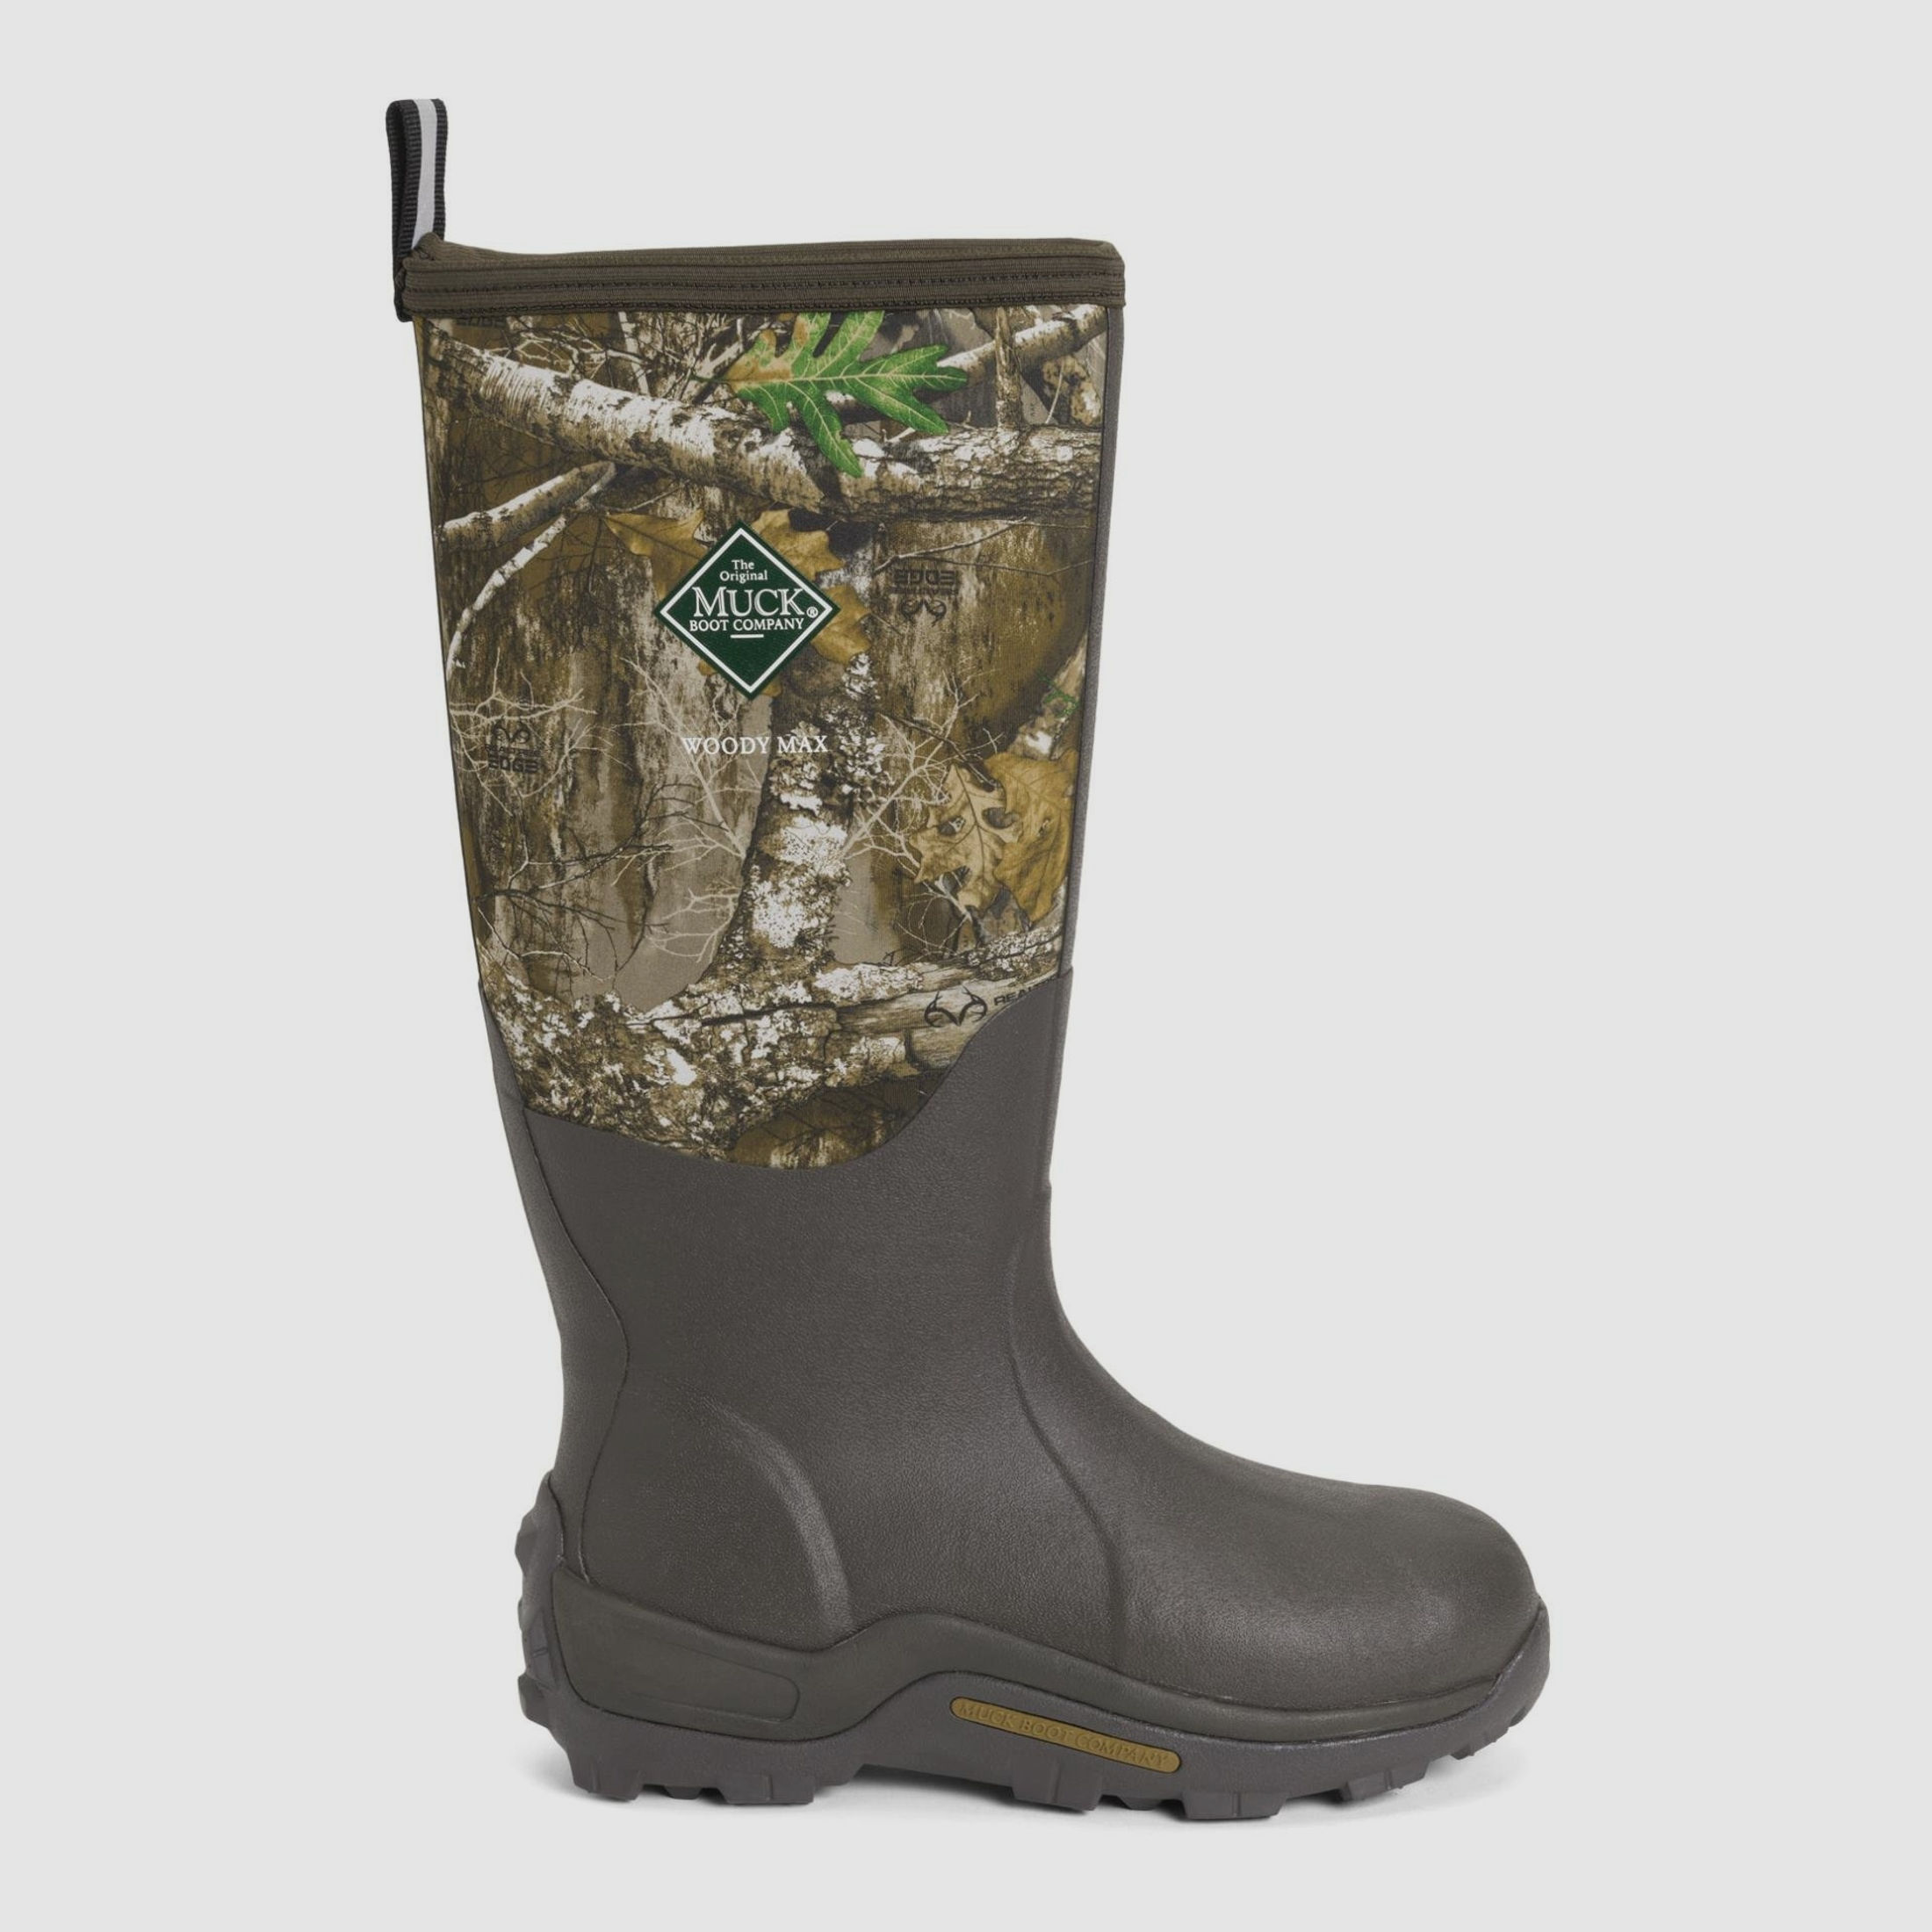 The Original Muck Boot Company Gummistiefel Herren Woody Max - camouflage  40